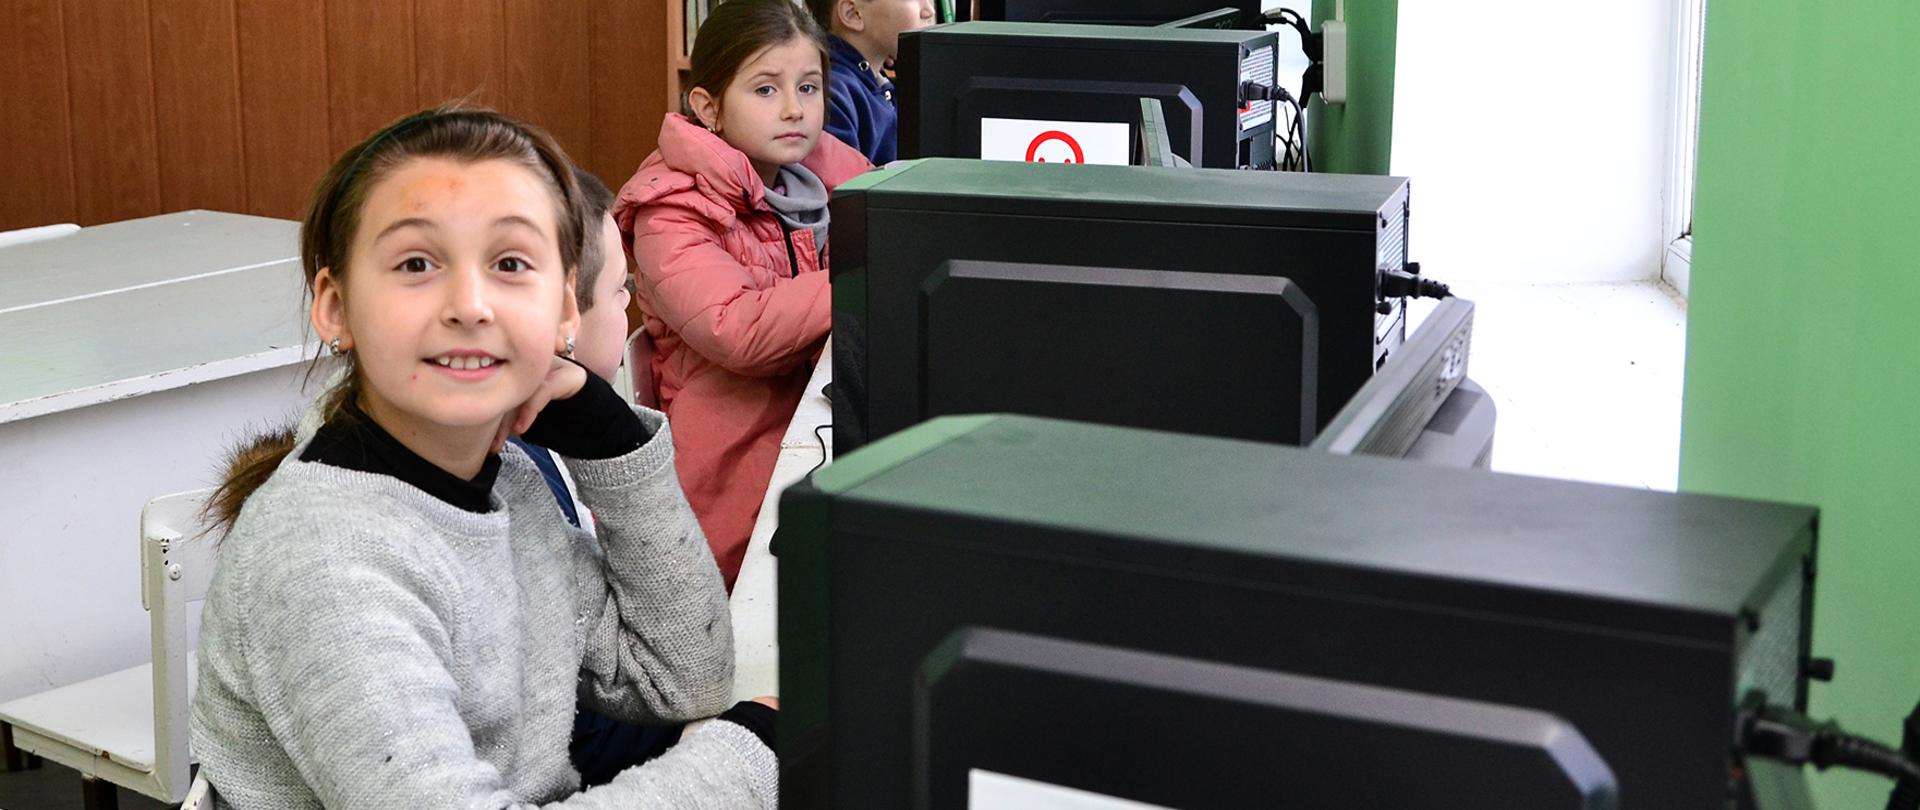 dzieci siedzące przy komputerach oznakowanyc znakiem Polska pomoc